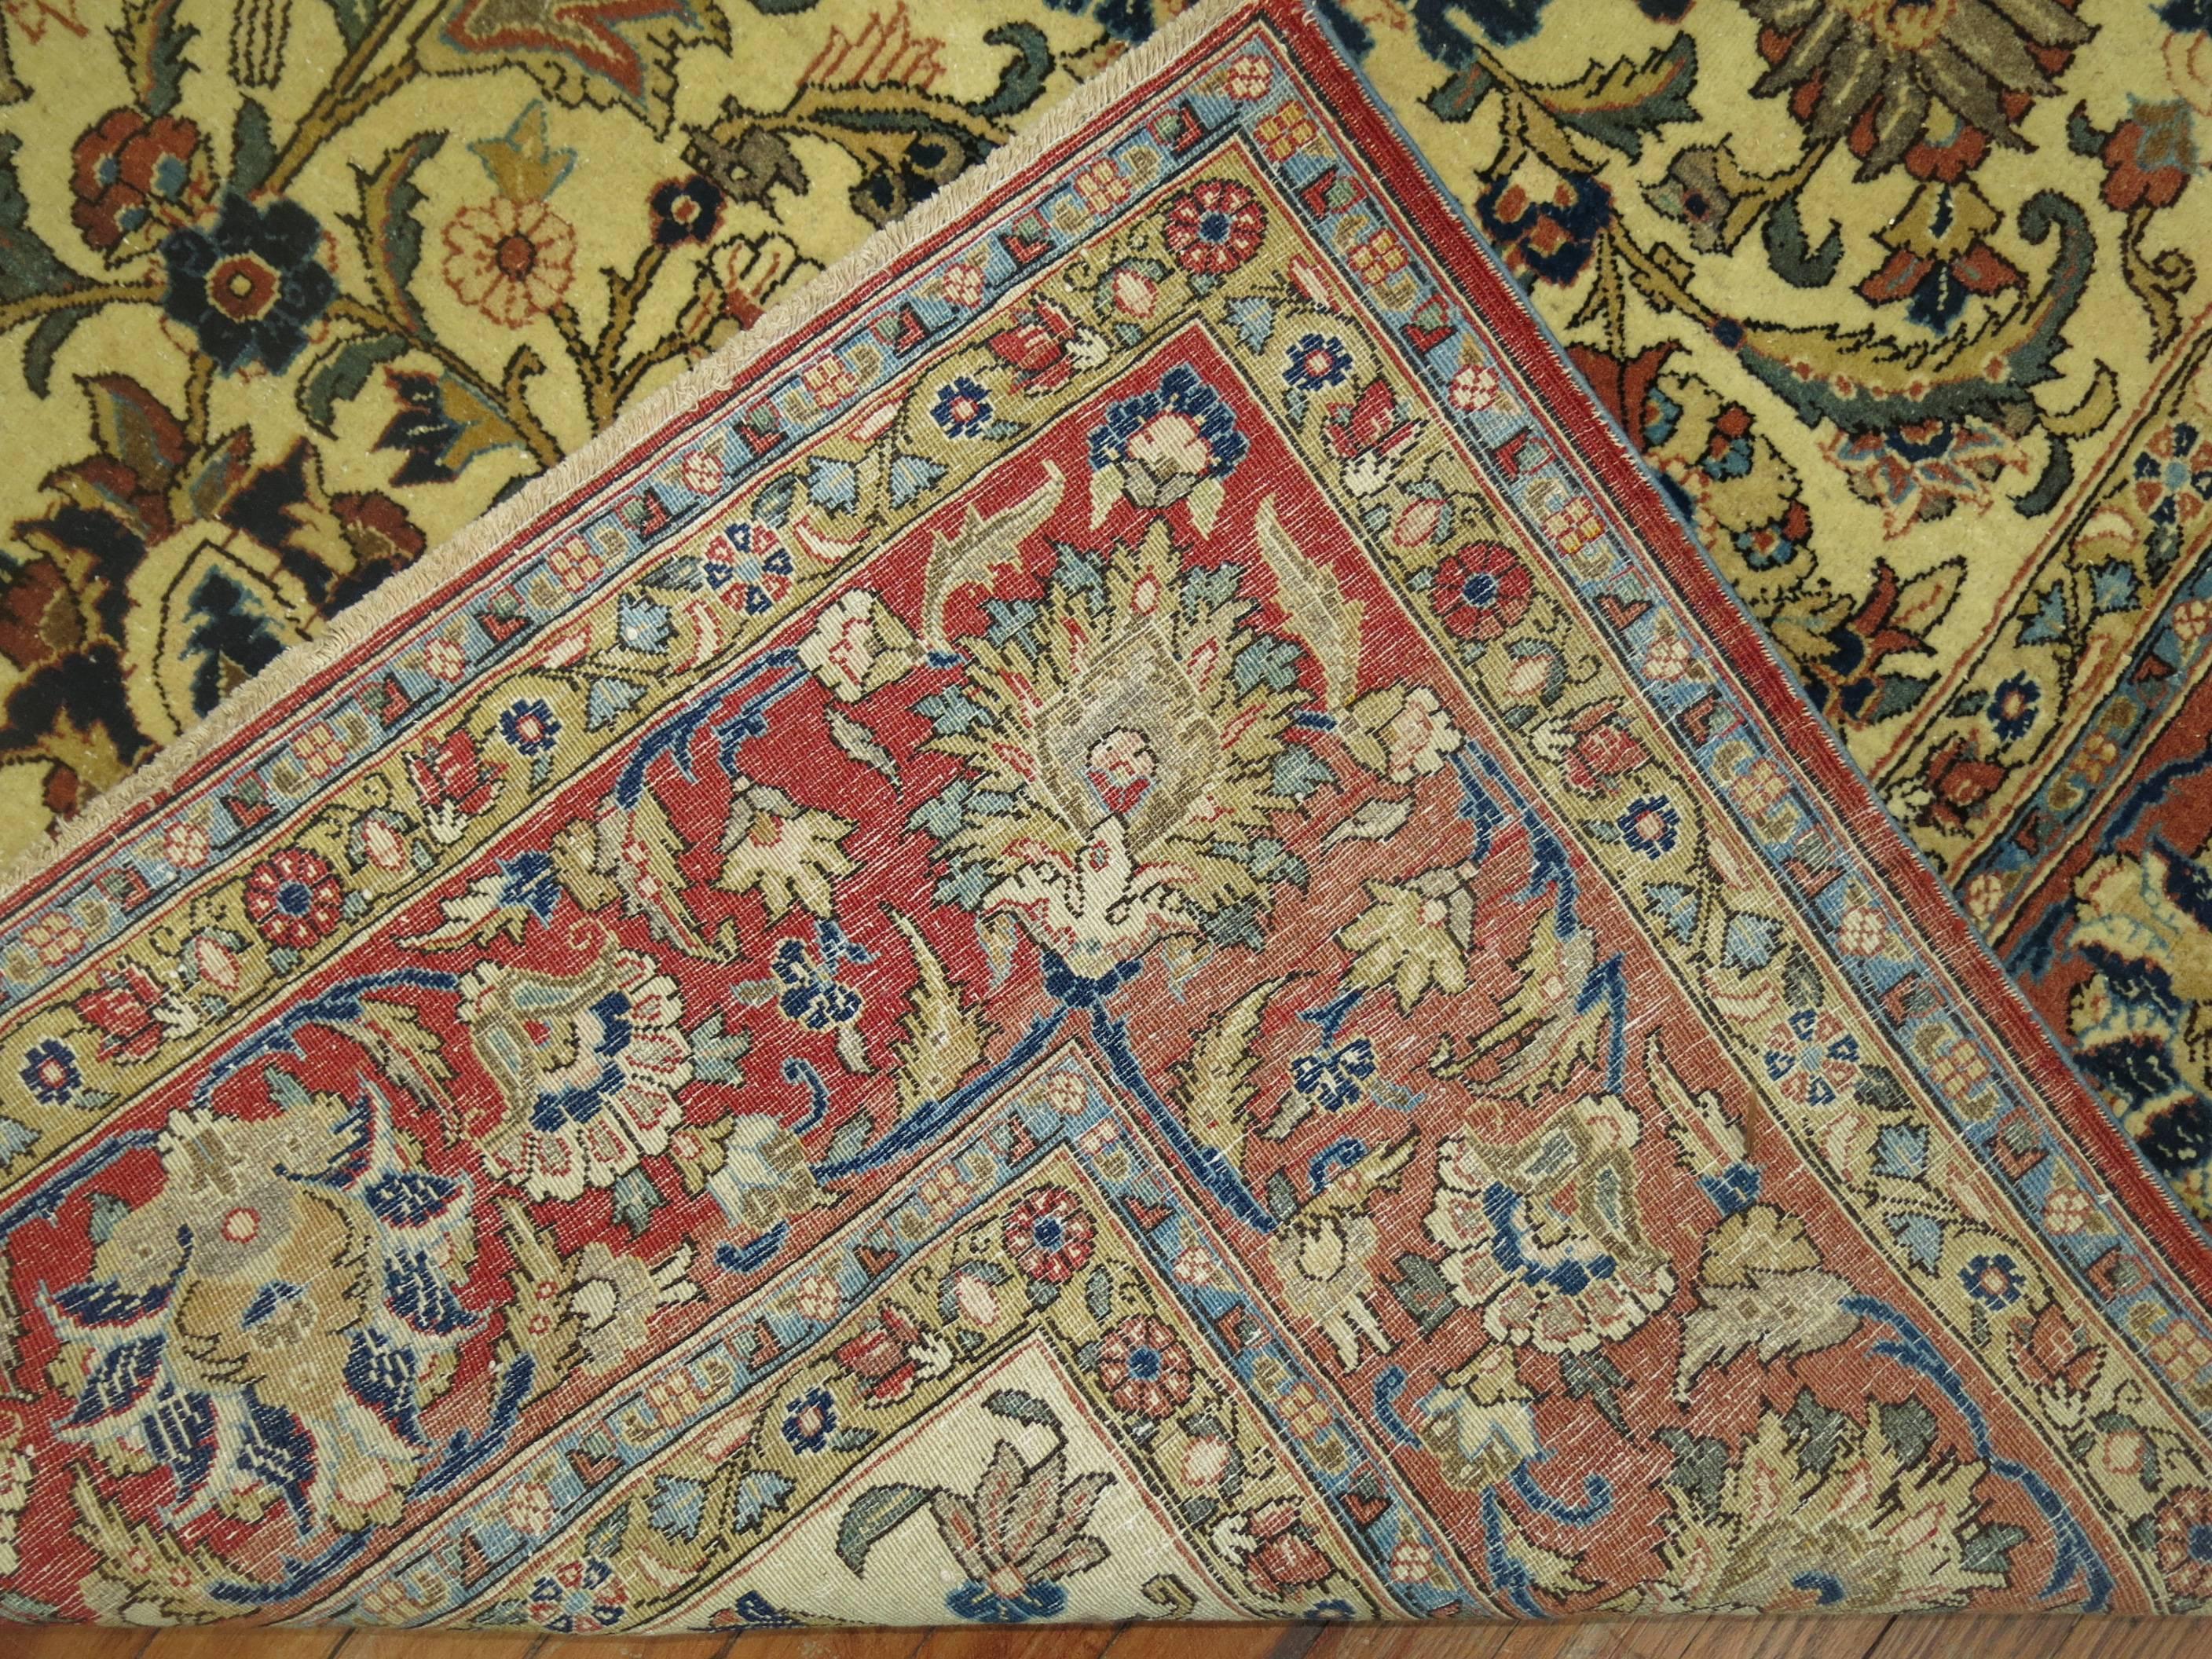 Authentischer dekorativer persischer Täbriz-Teppich in Zimmergröße.

Die Knüpfer von Qum sind bekannt für die Herstellung von Gebetsteppichen mit eleganten Lebensbaummustern sowie von Fächerdesigns, die von klassischen persischen Gartenteppichen